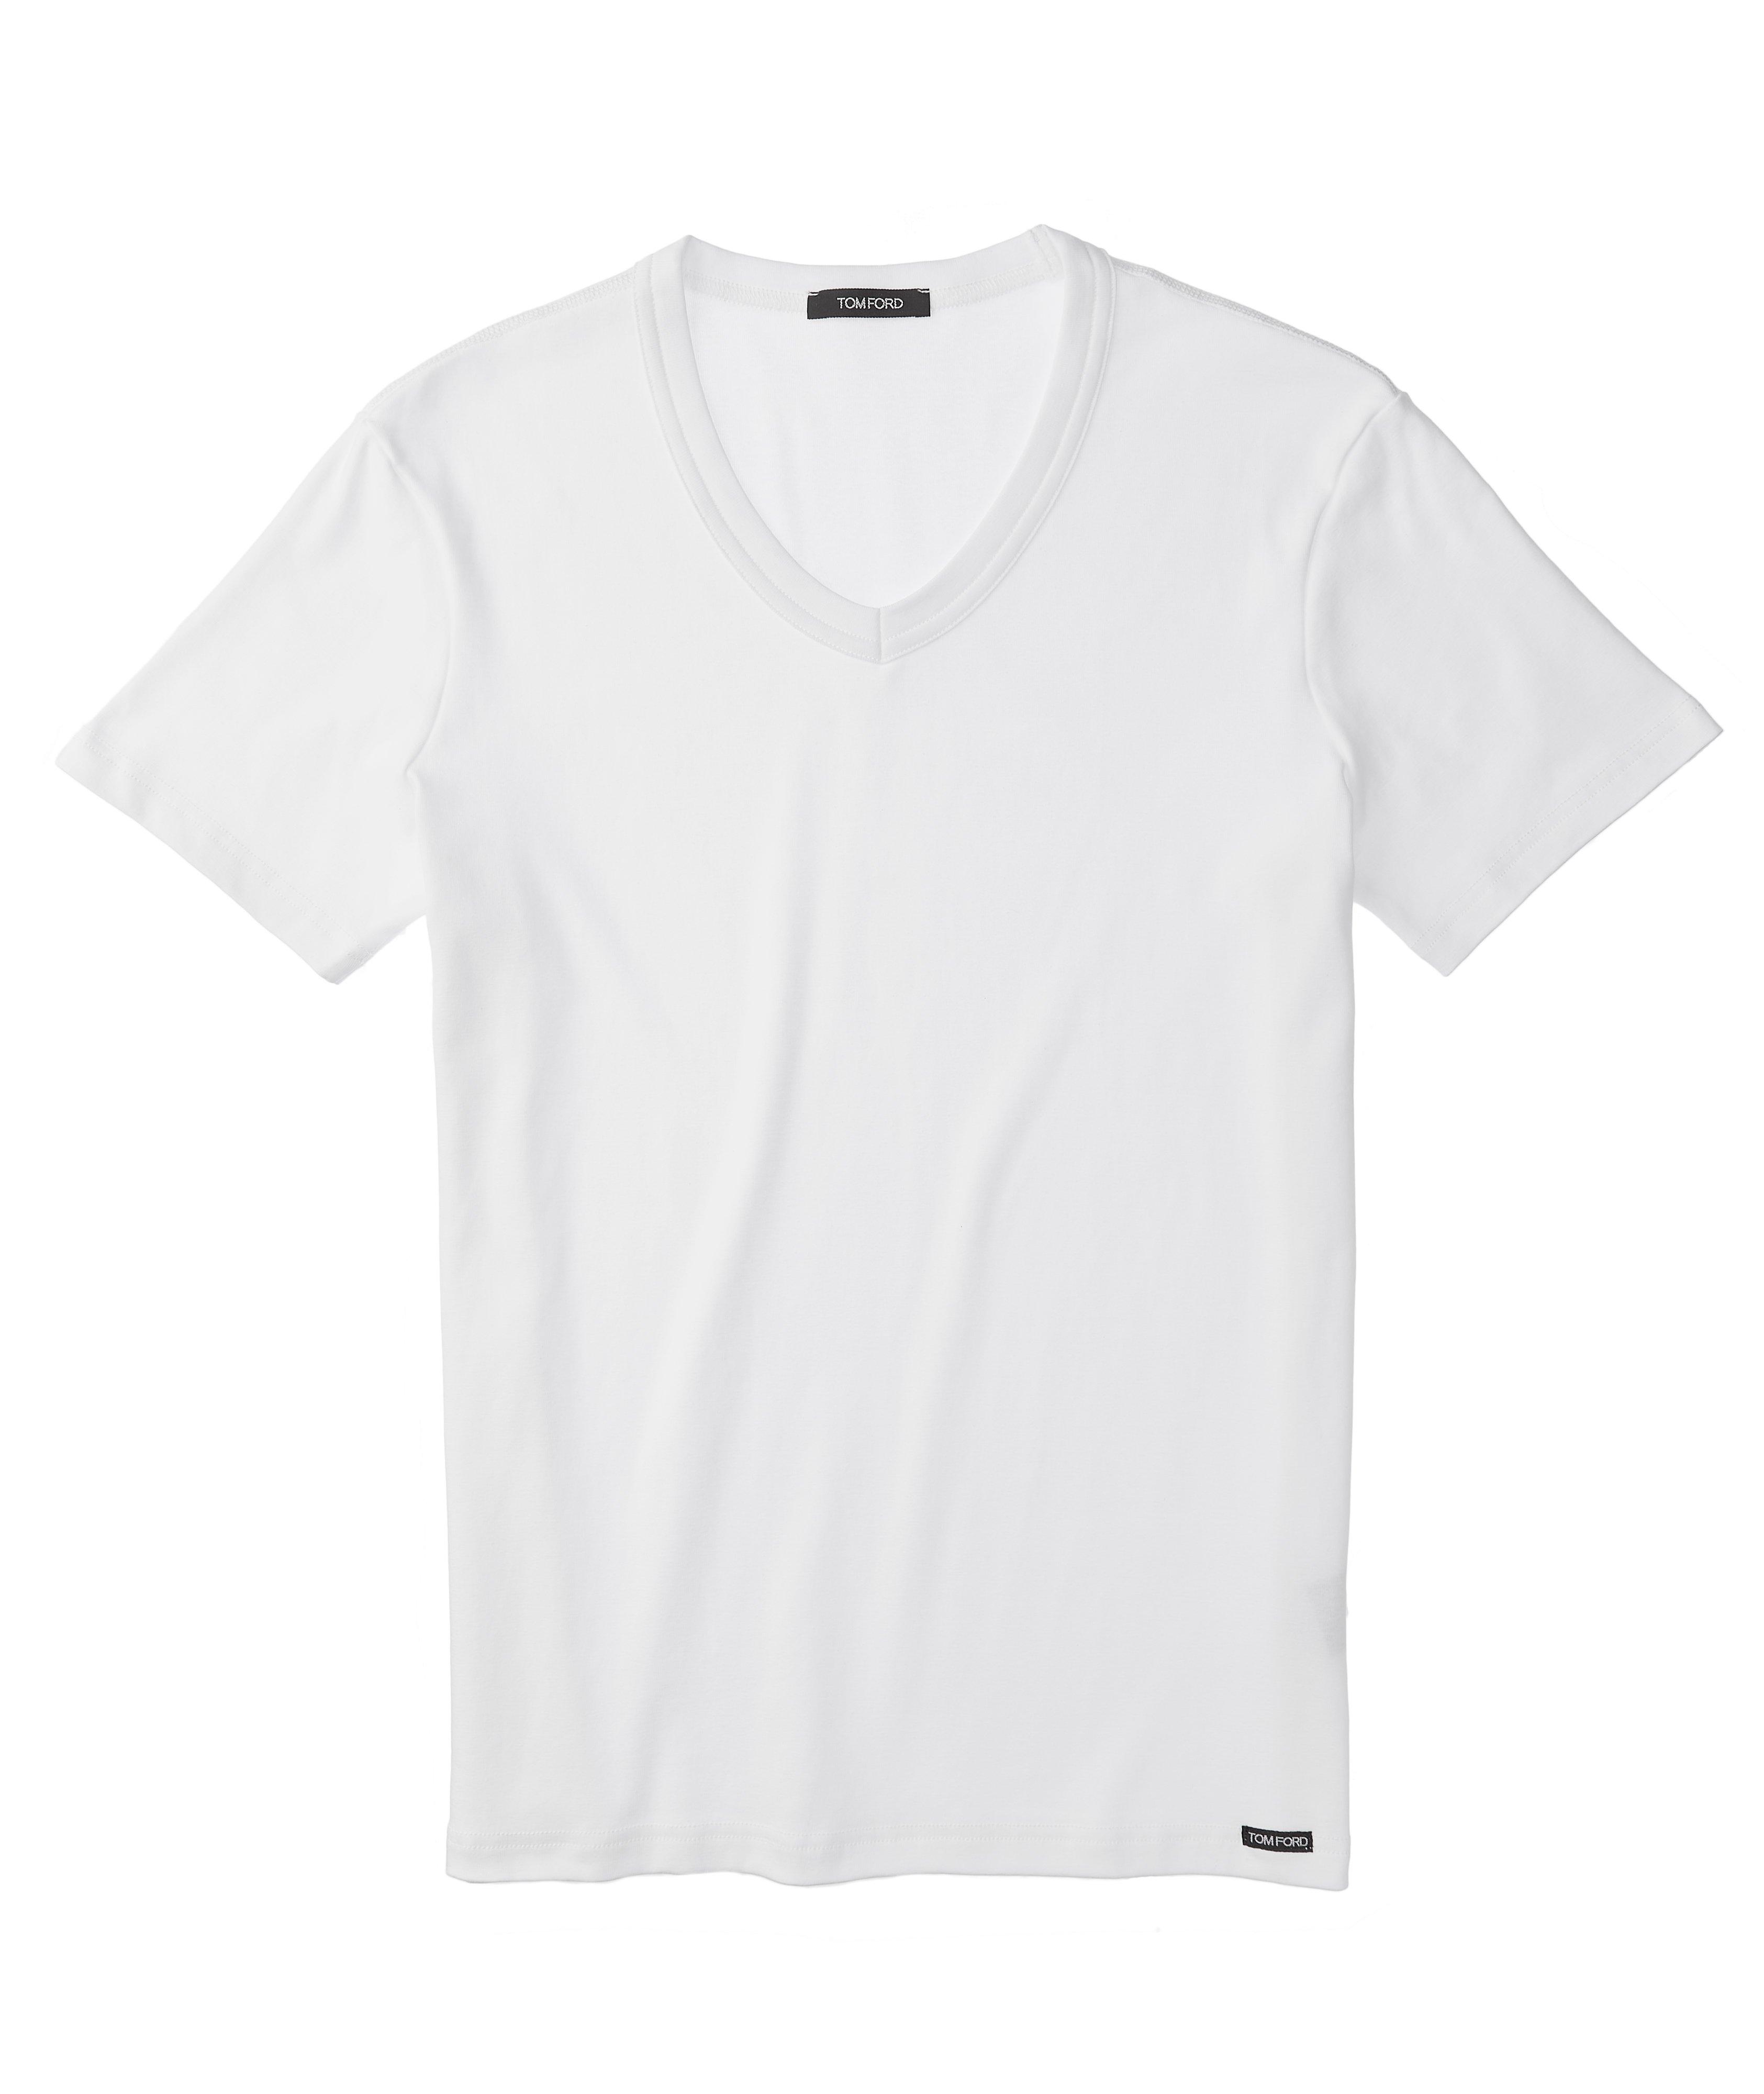 Stretch-Cotton Jersey V-Neck T-Shirt image 0